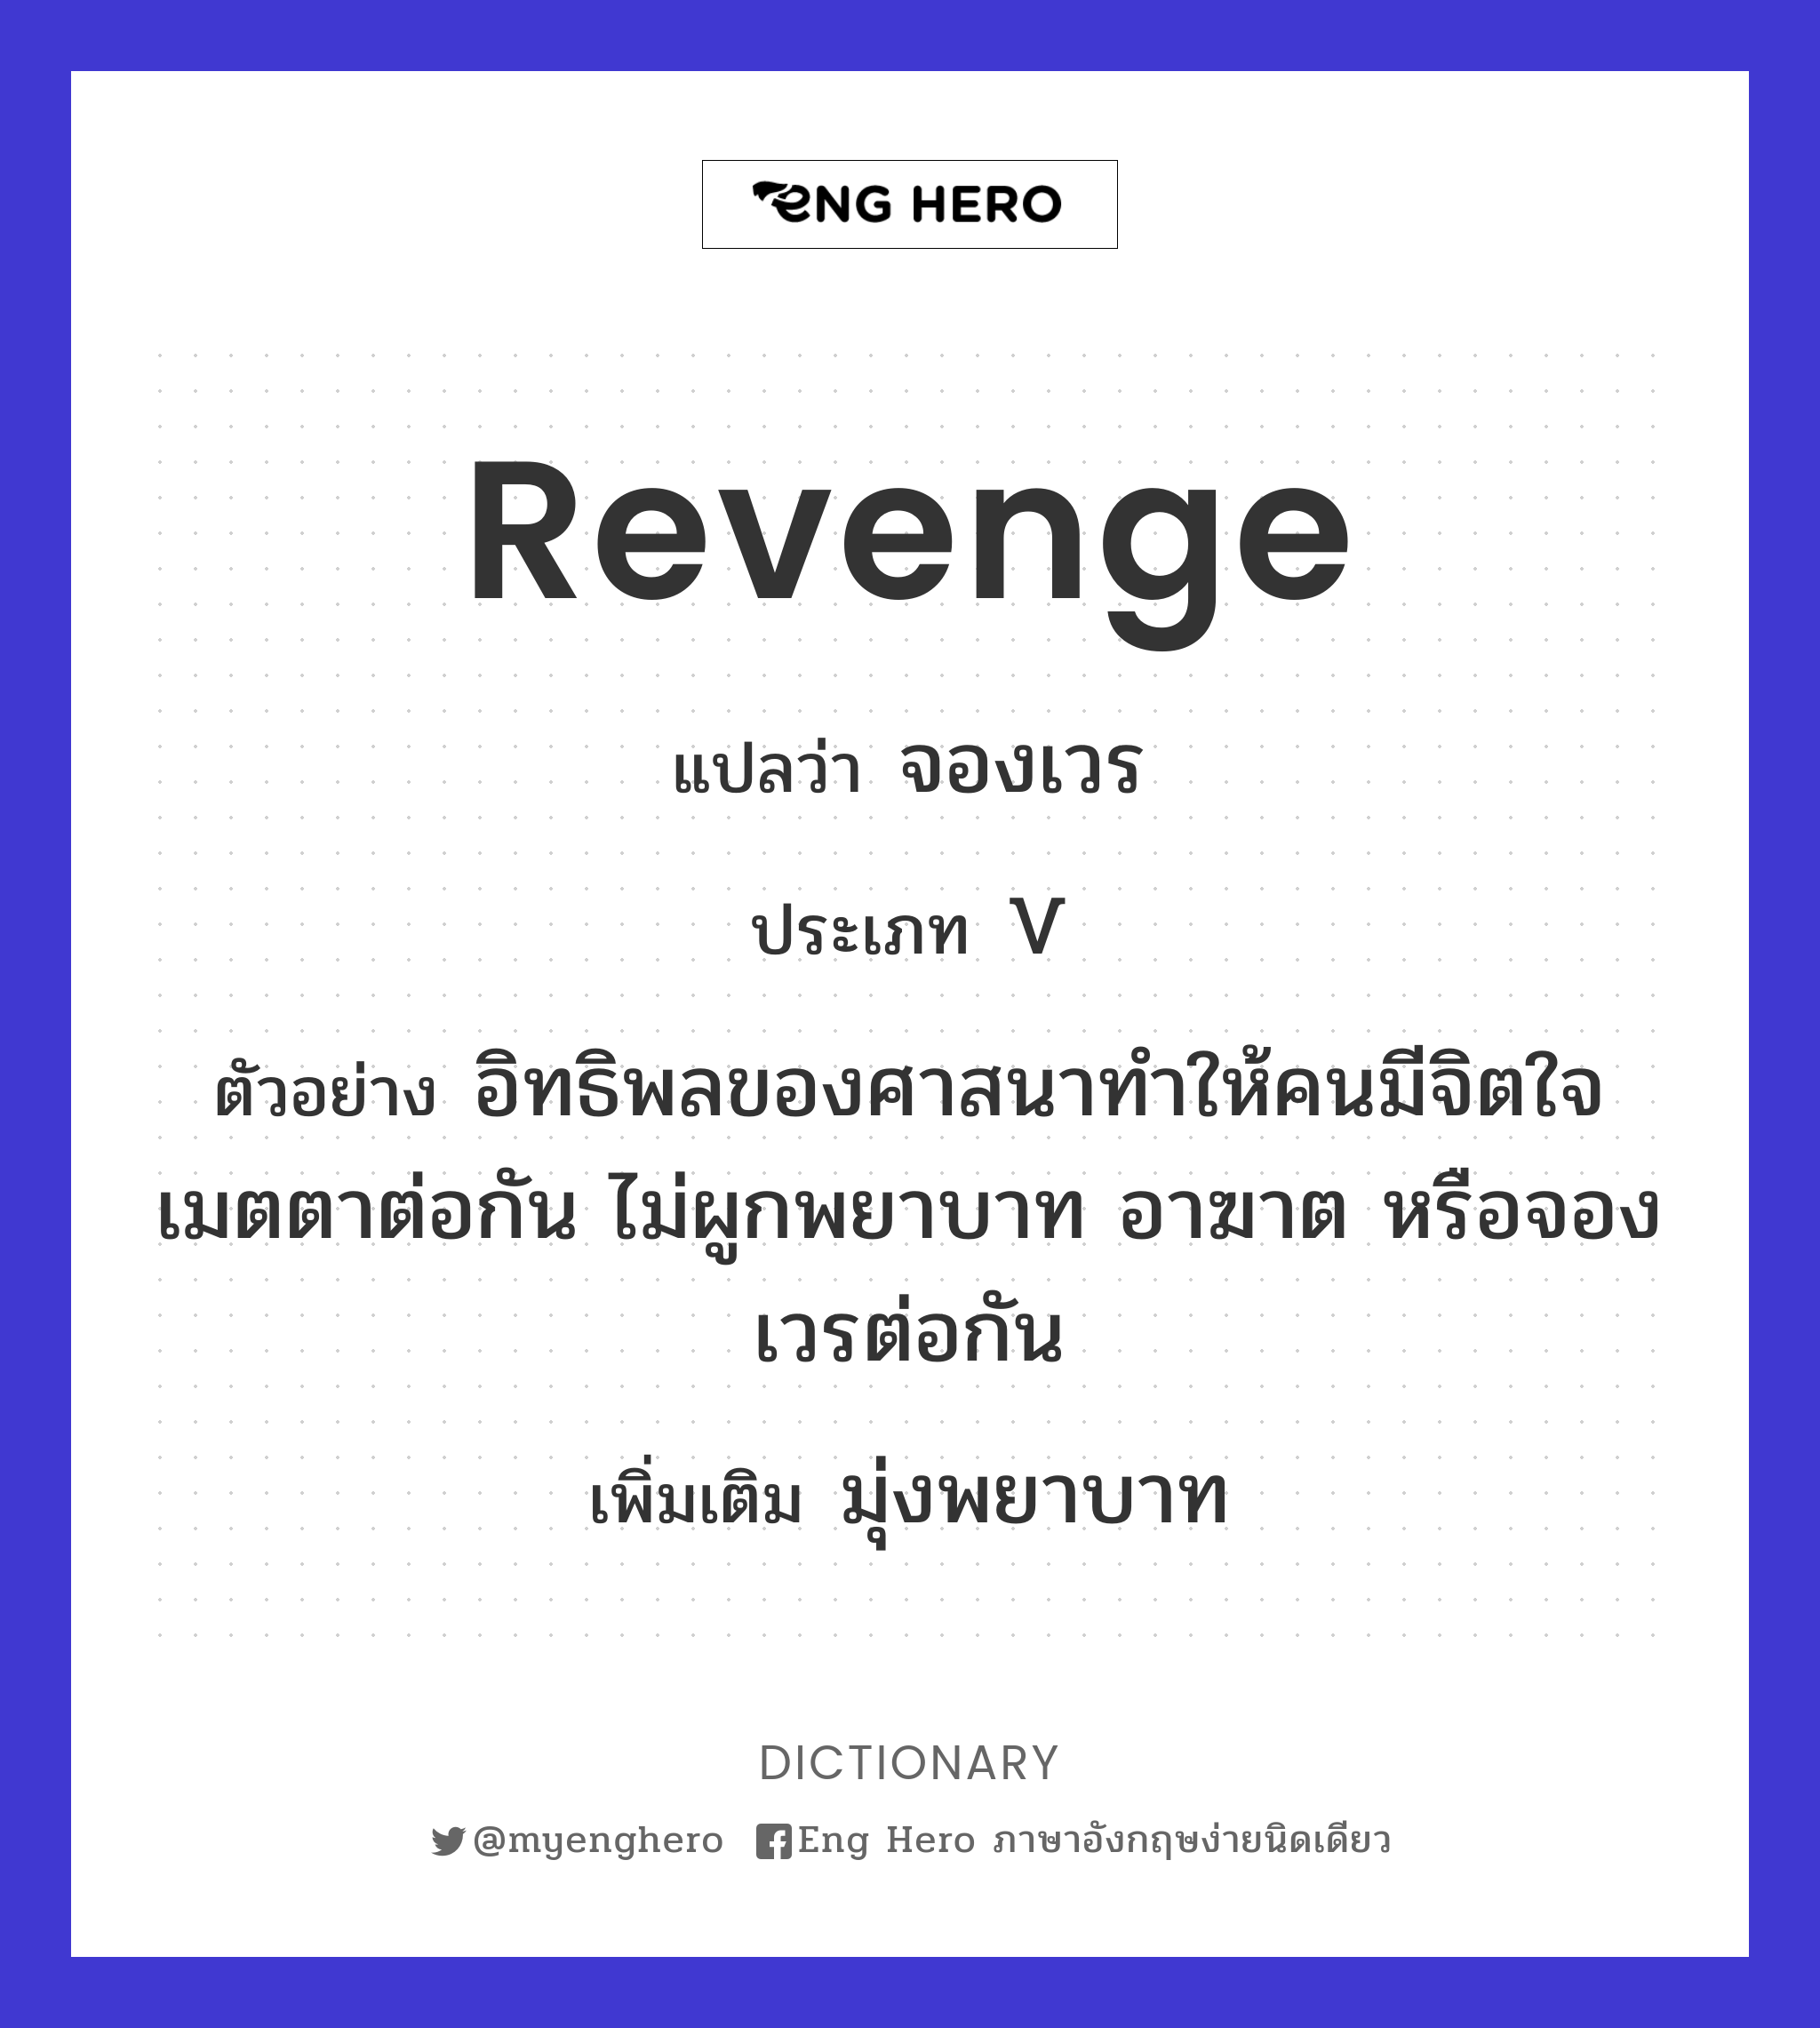 revenge